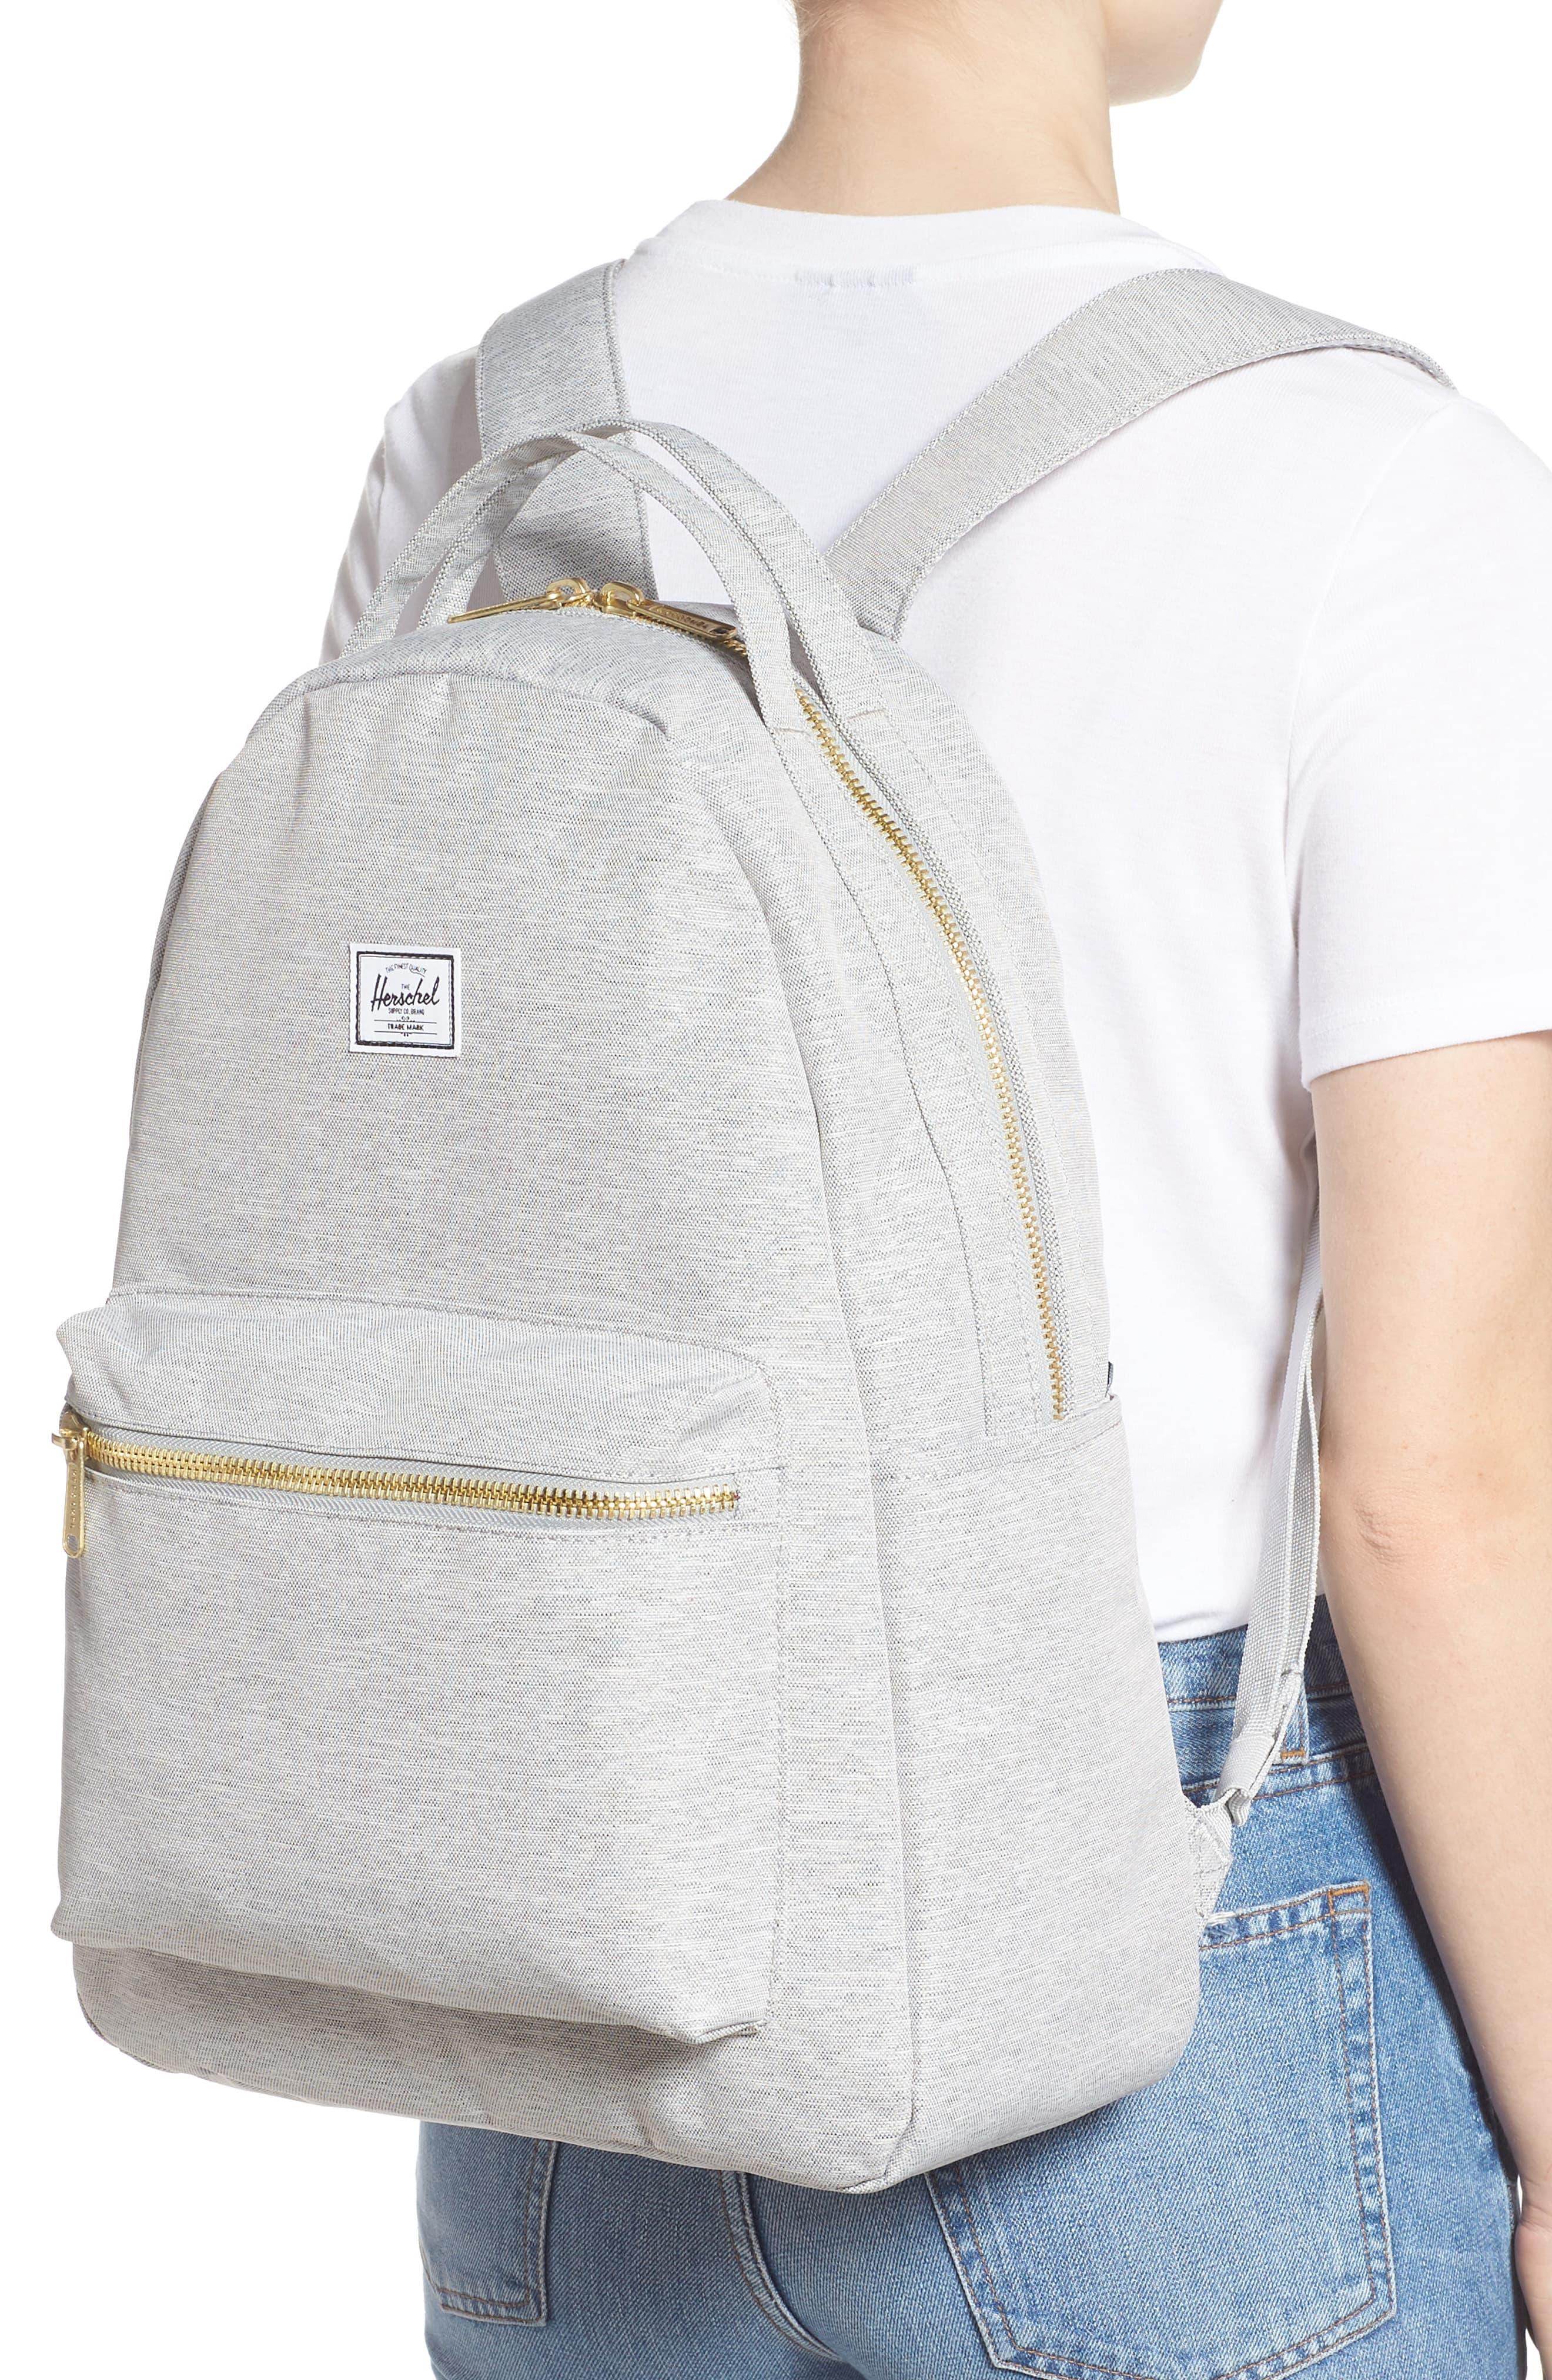 [Get 39+] Herschel Diaper Bag Backpack